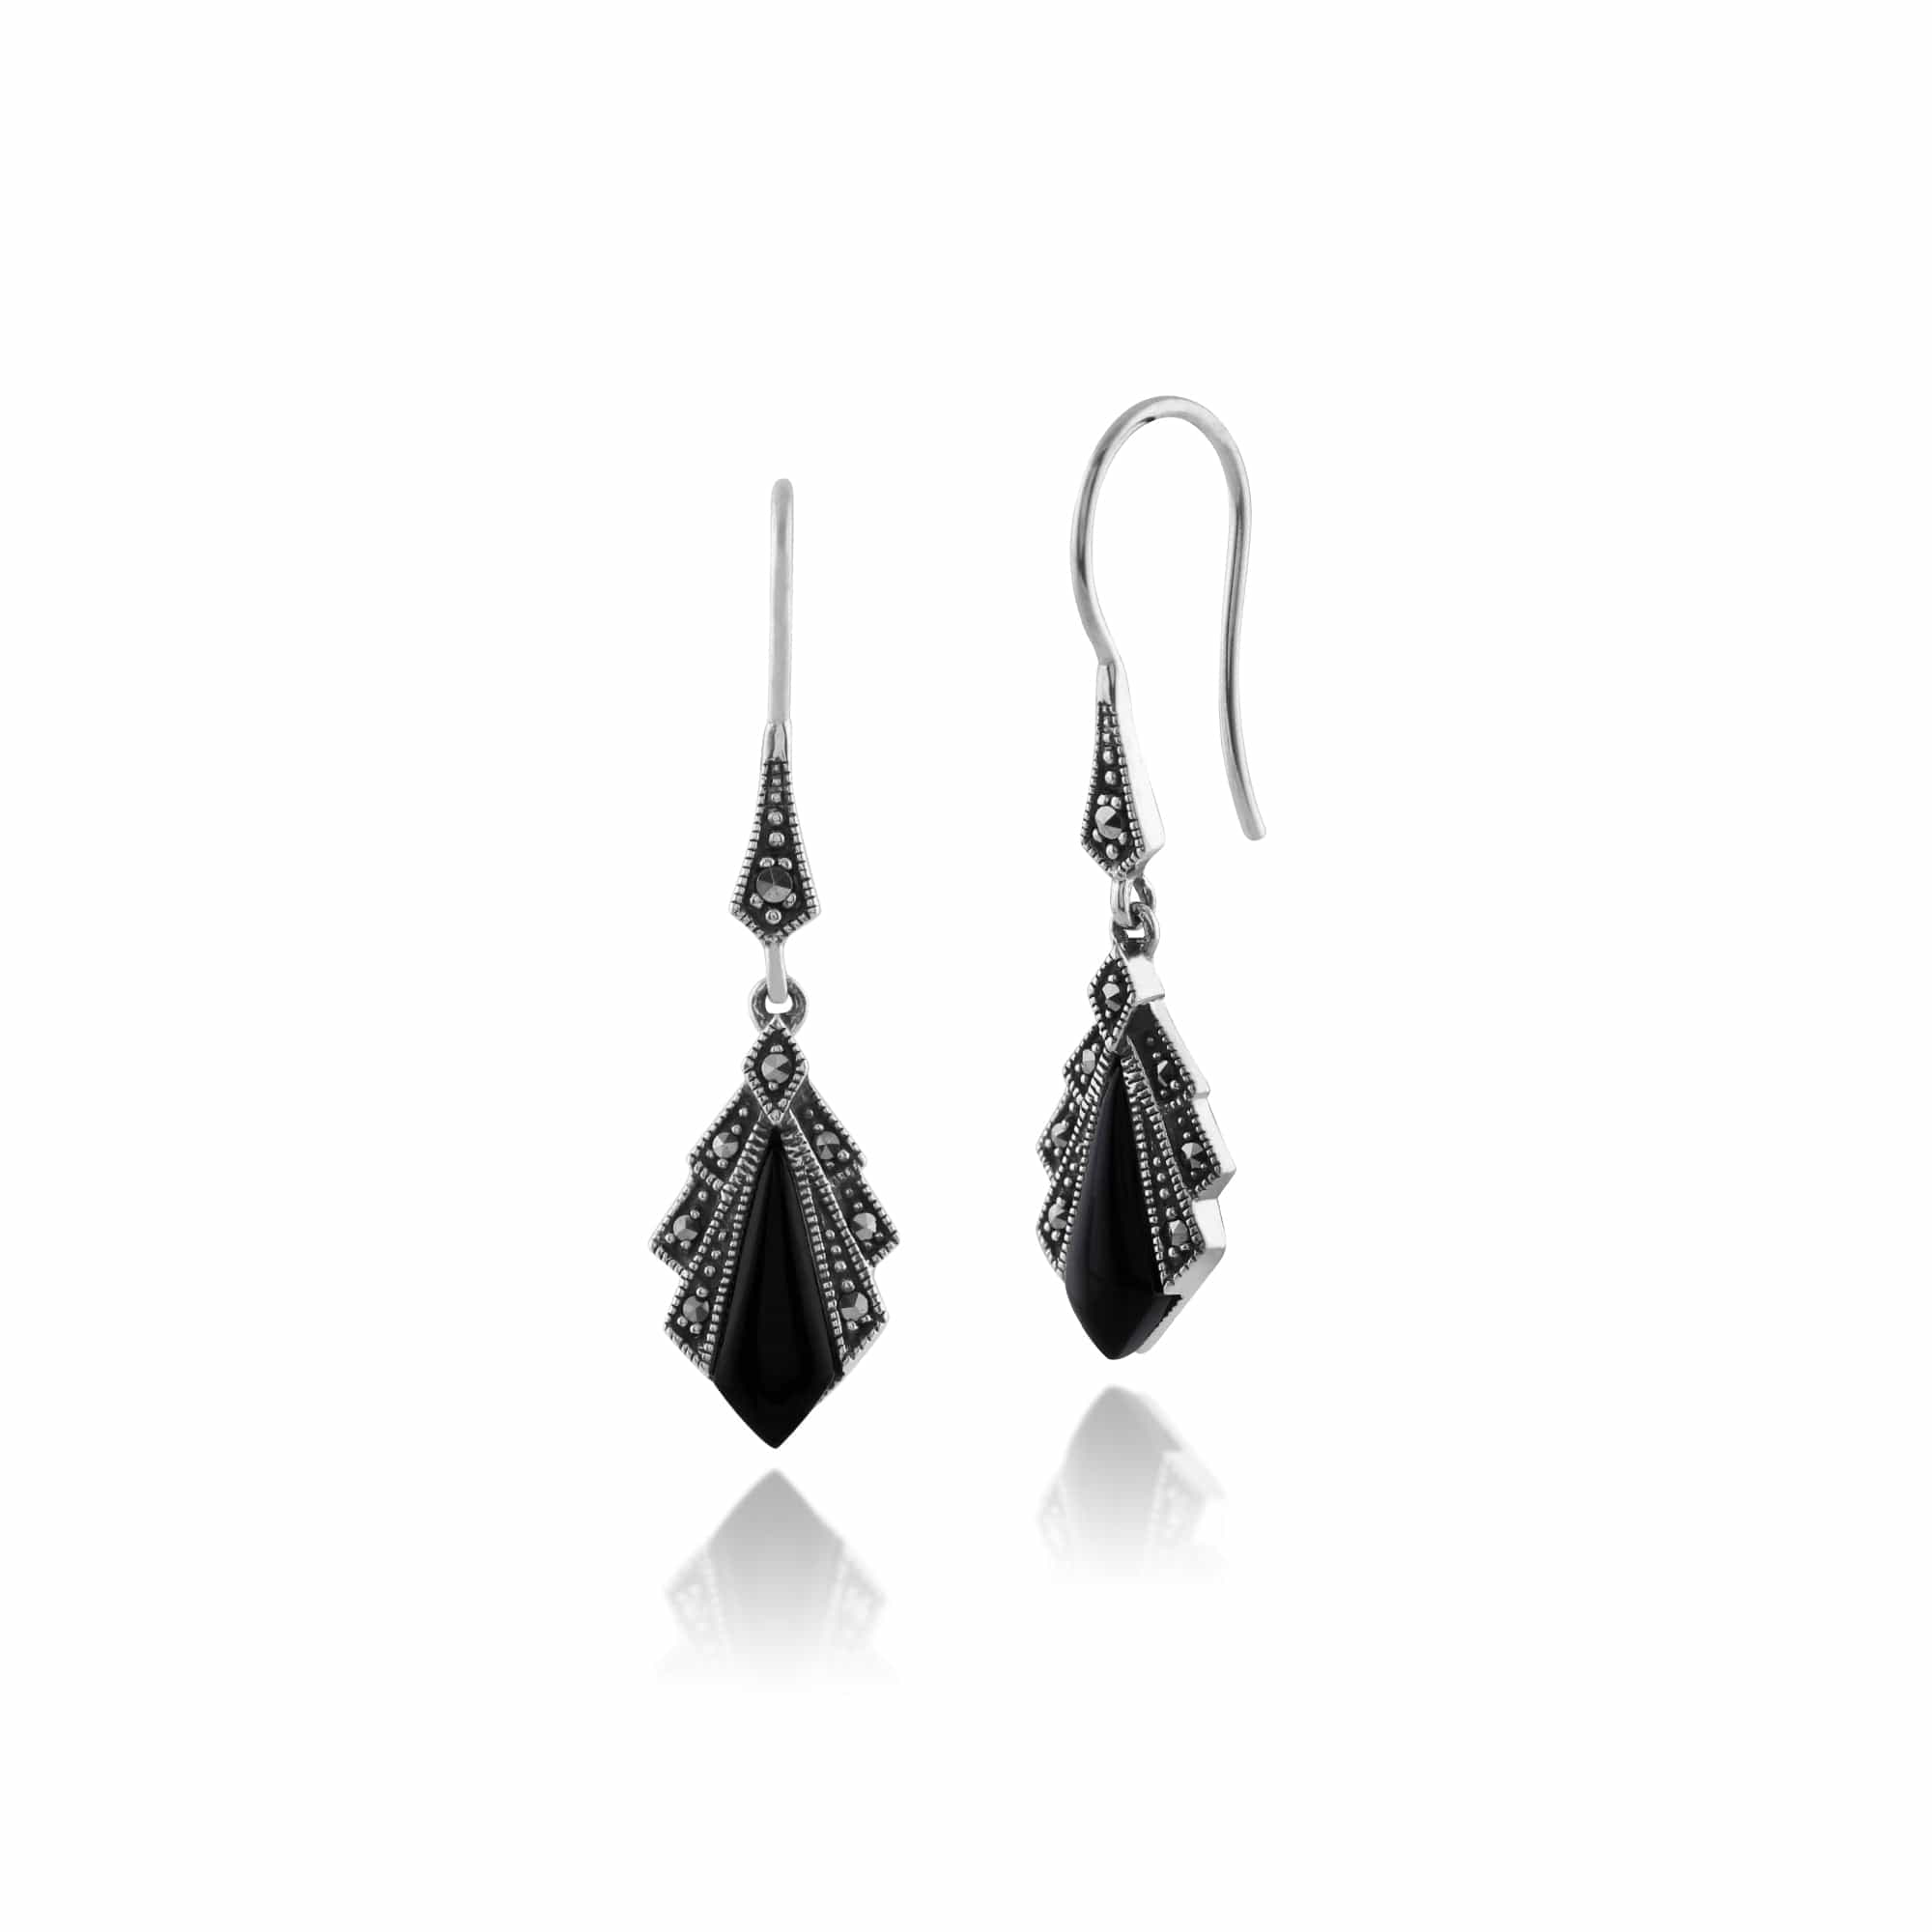 Art Deco Style Diamond Black Onyx & Marcasite Drop Earrings in 925 Sterling Silver - Gemondo